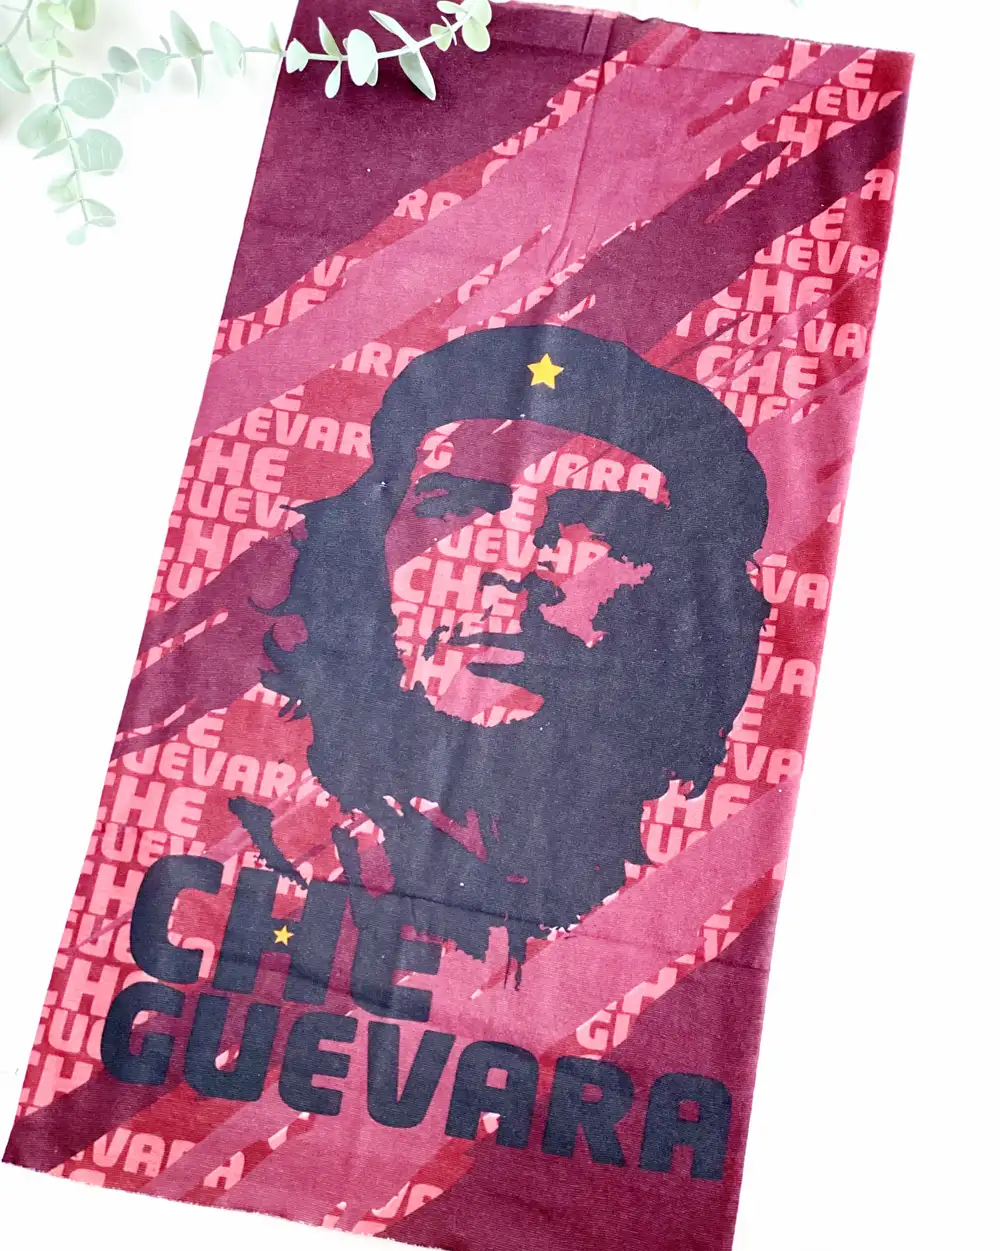 Boyunluk Baff - Che Guevara Boyunluk Baff